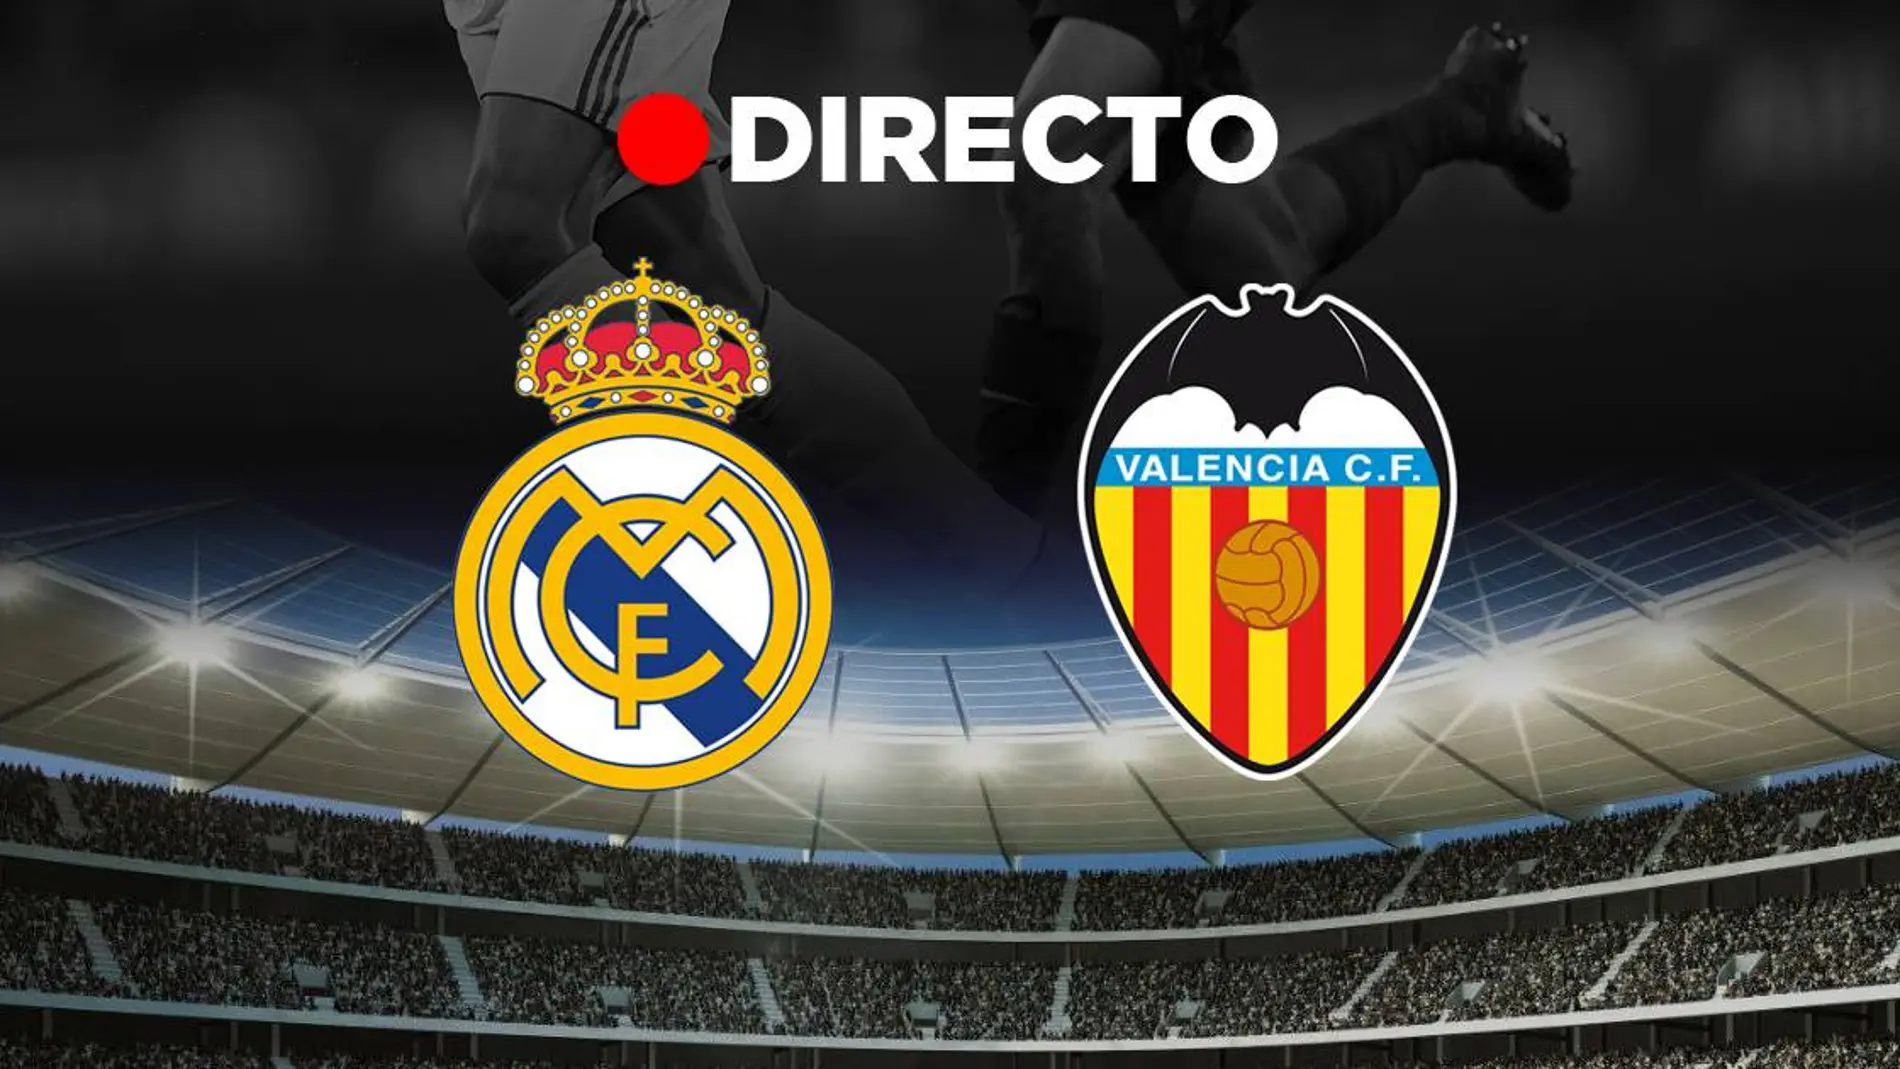 Real Madrid - Valencia CF: Resultado partido de hoy de la LaLiga de fútbol, en directo